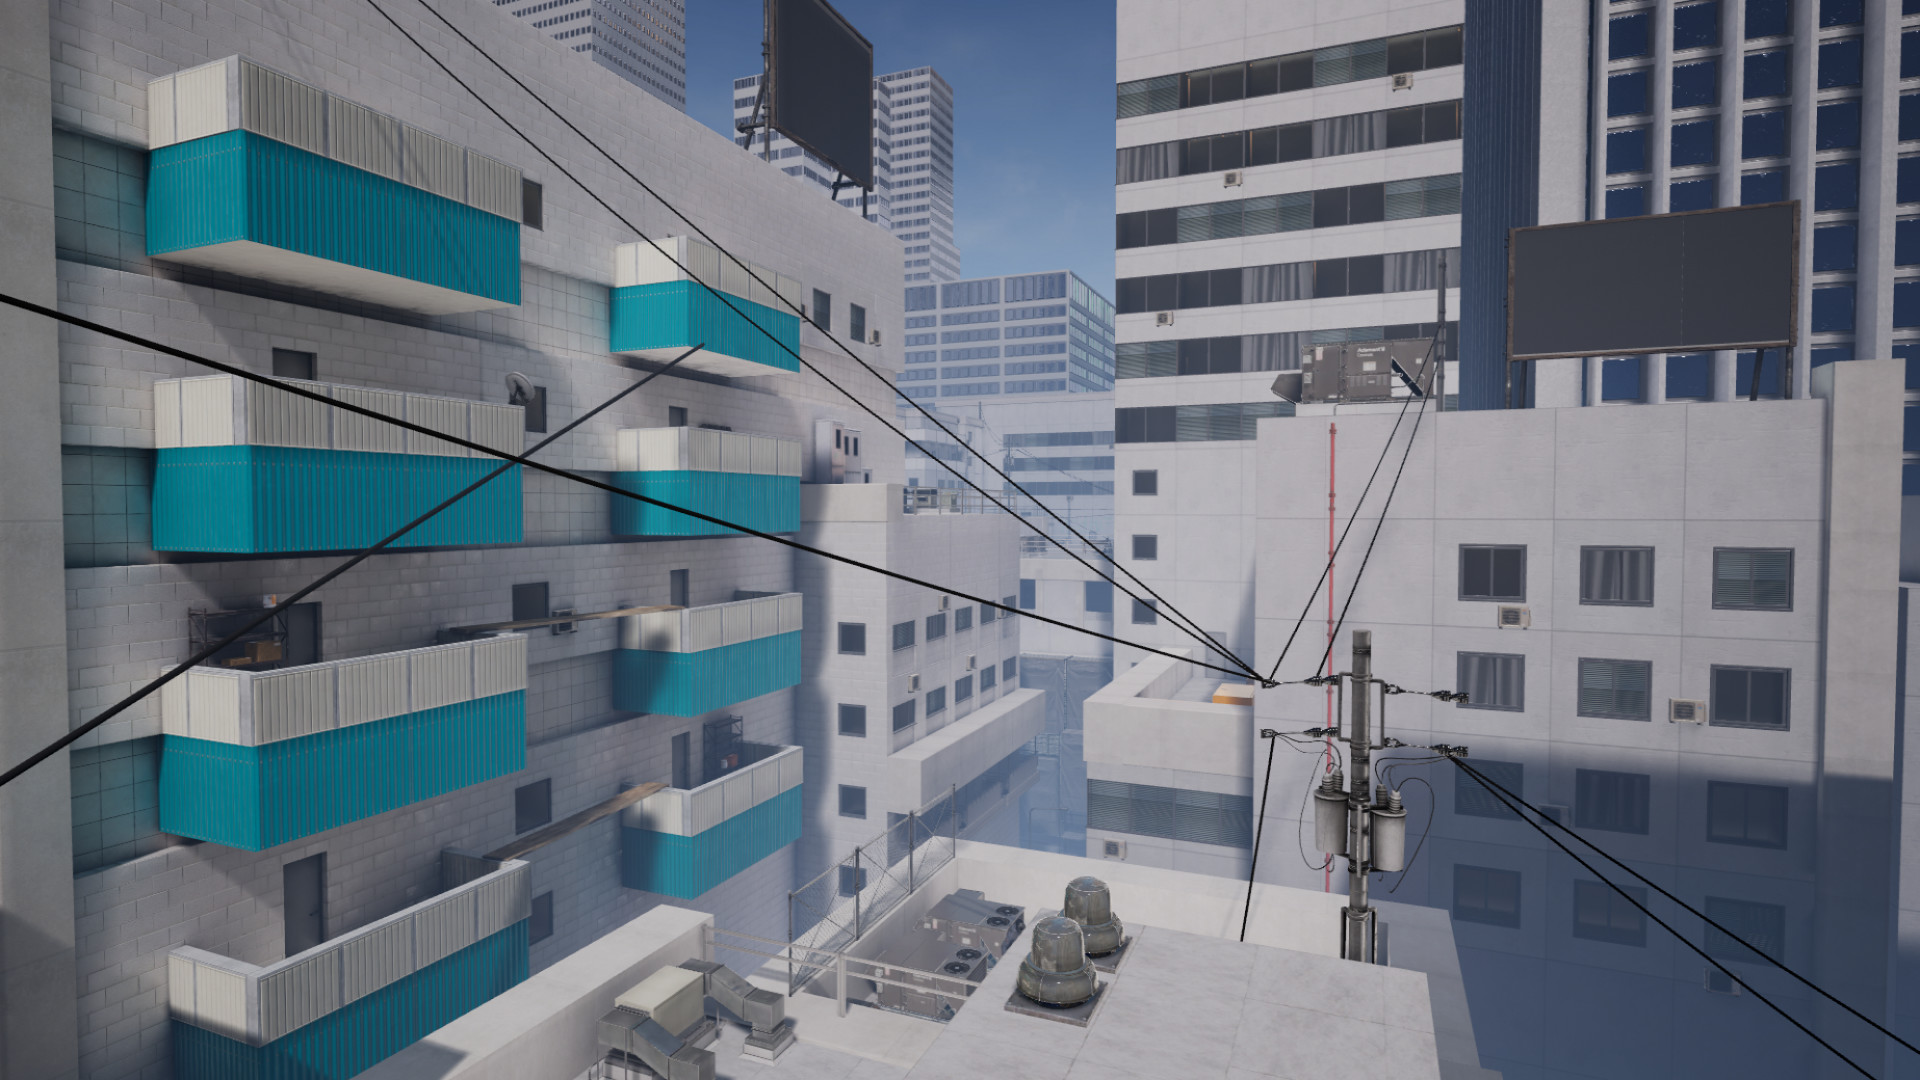 パルクールで屋根から屋根へと飛び回るVRアクションゲーム『STRIDE』今夏発売決定。『Mirror’s Edge』をそのままVRにしたようなアクションタイトル_002